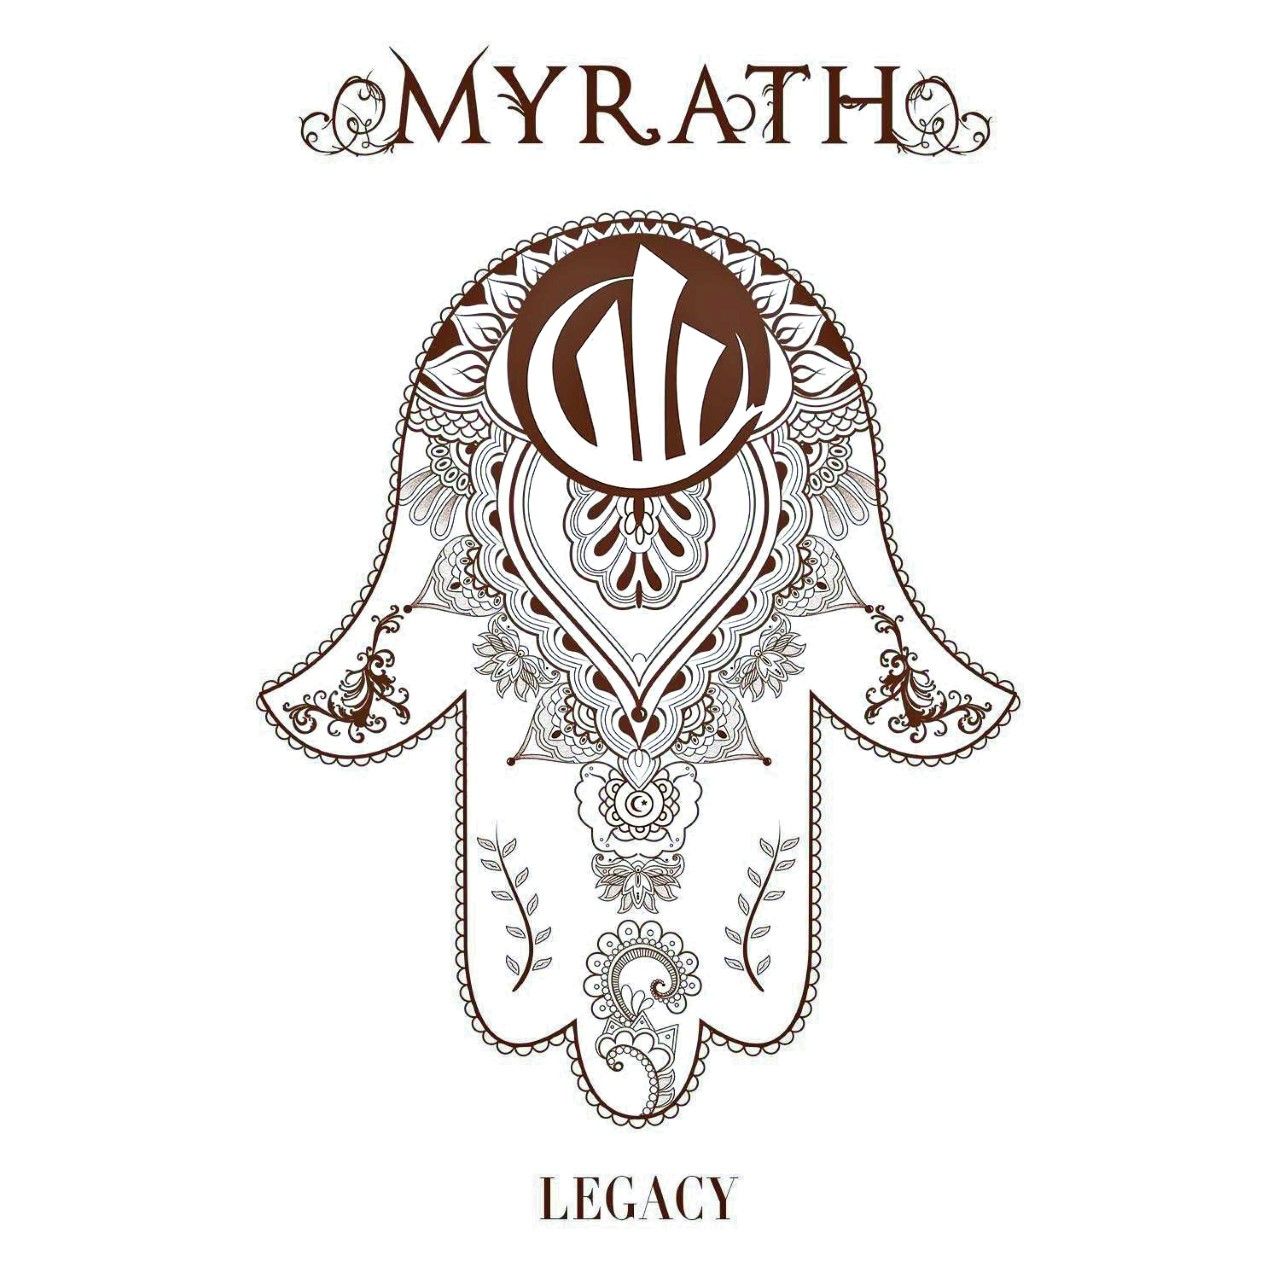 Myrath - Legacy (2016)